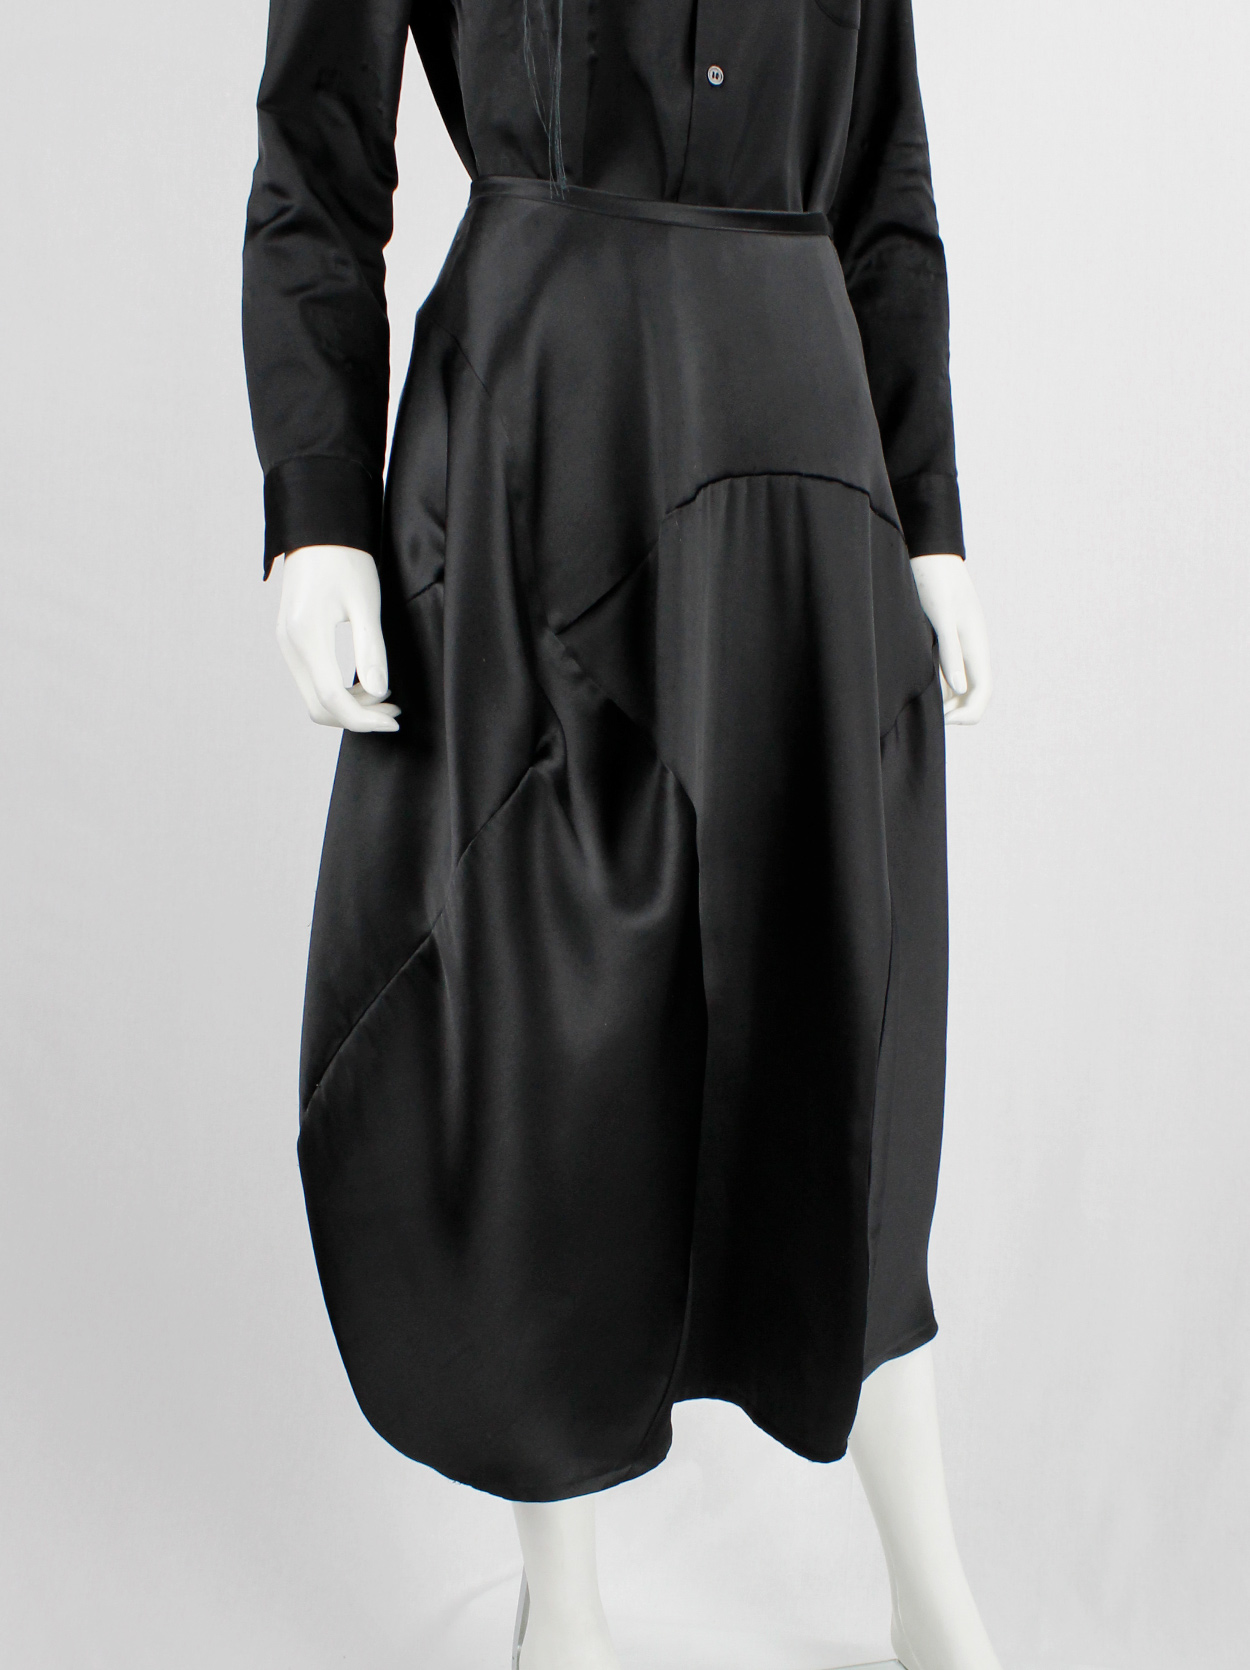 Comme des Garçons tricot black maxi skirt with bubble-shaped volume ...